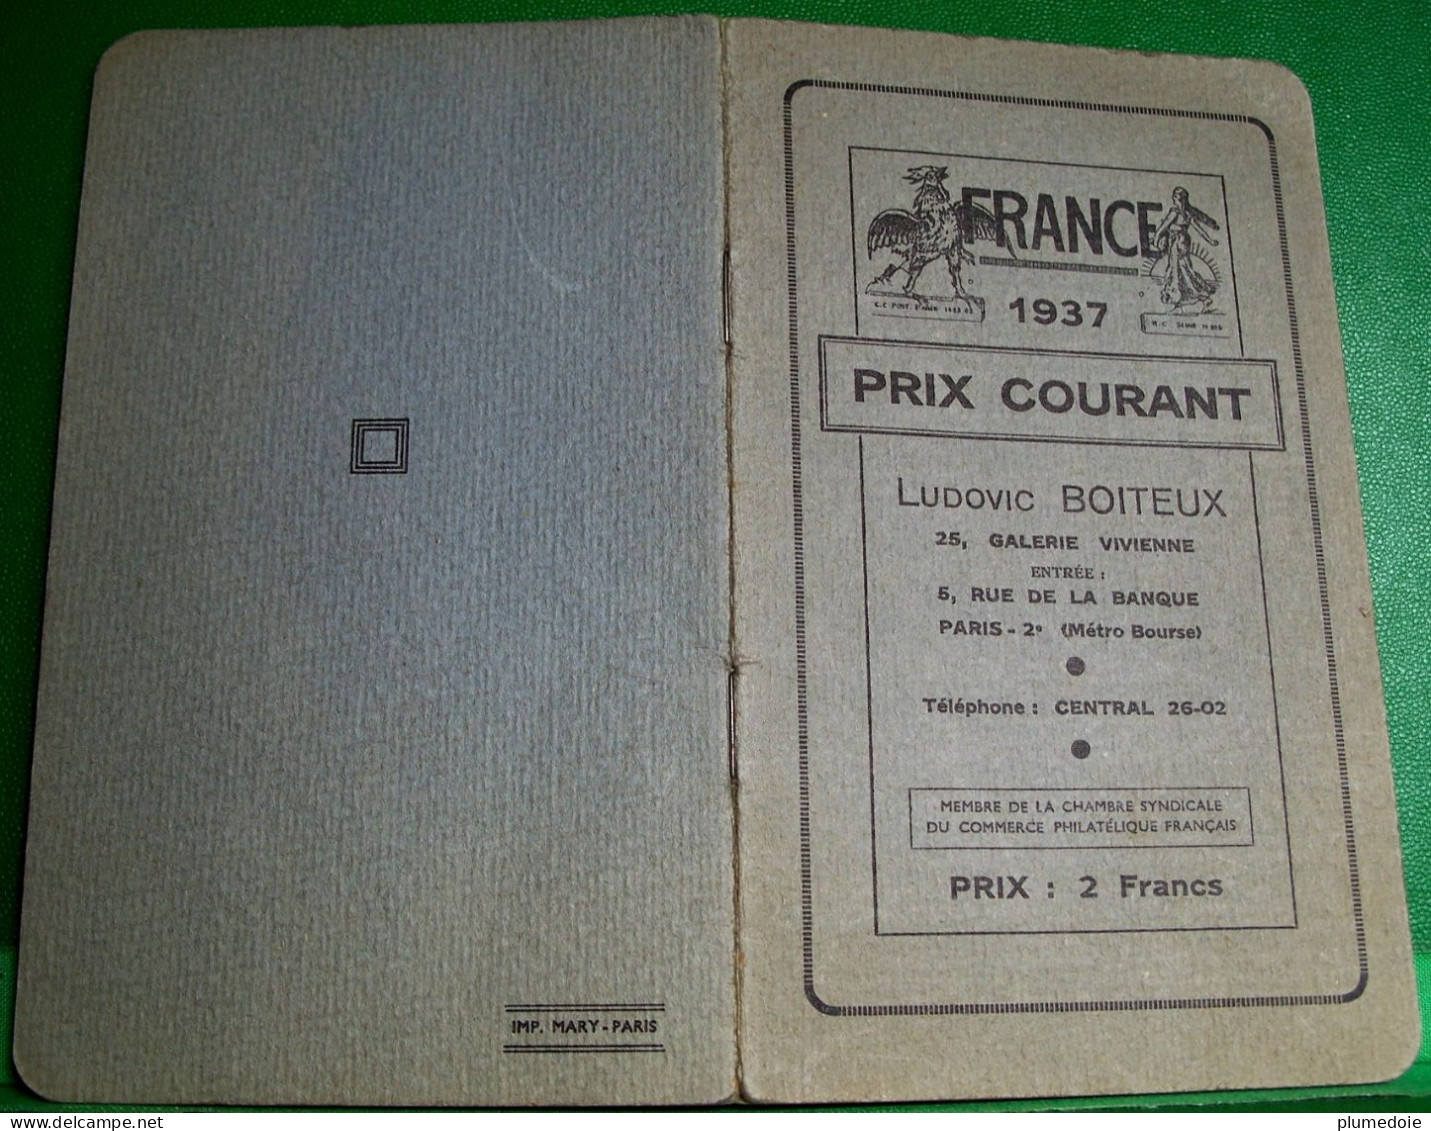 PHILATELIE CATALOGUE FRANCE . PRIX COURANT 1937 .LUDOVIC BOITEUX  PARIS GALERIE VIVIENNE . OPUSCULE  VENTE DE TIMBRES